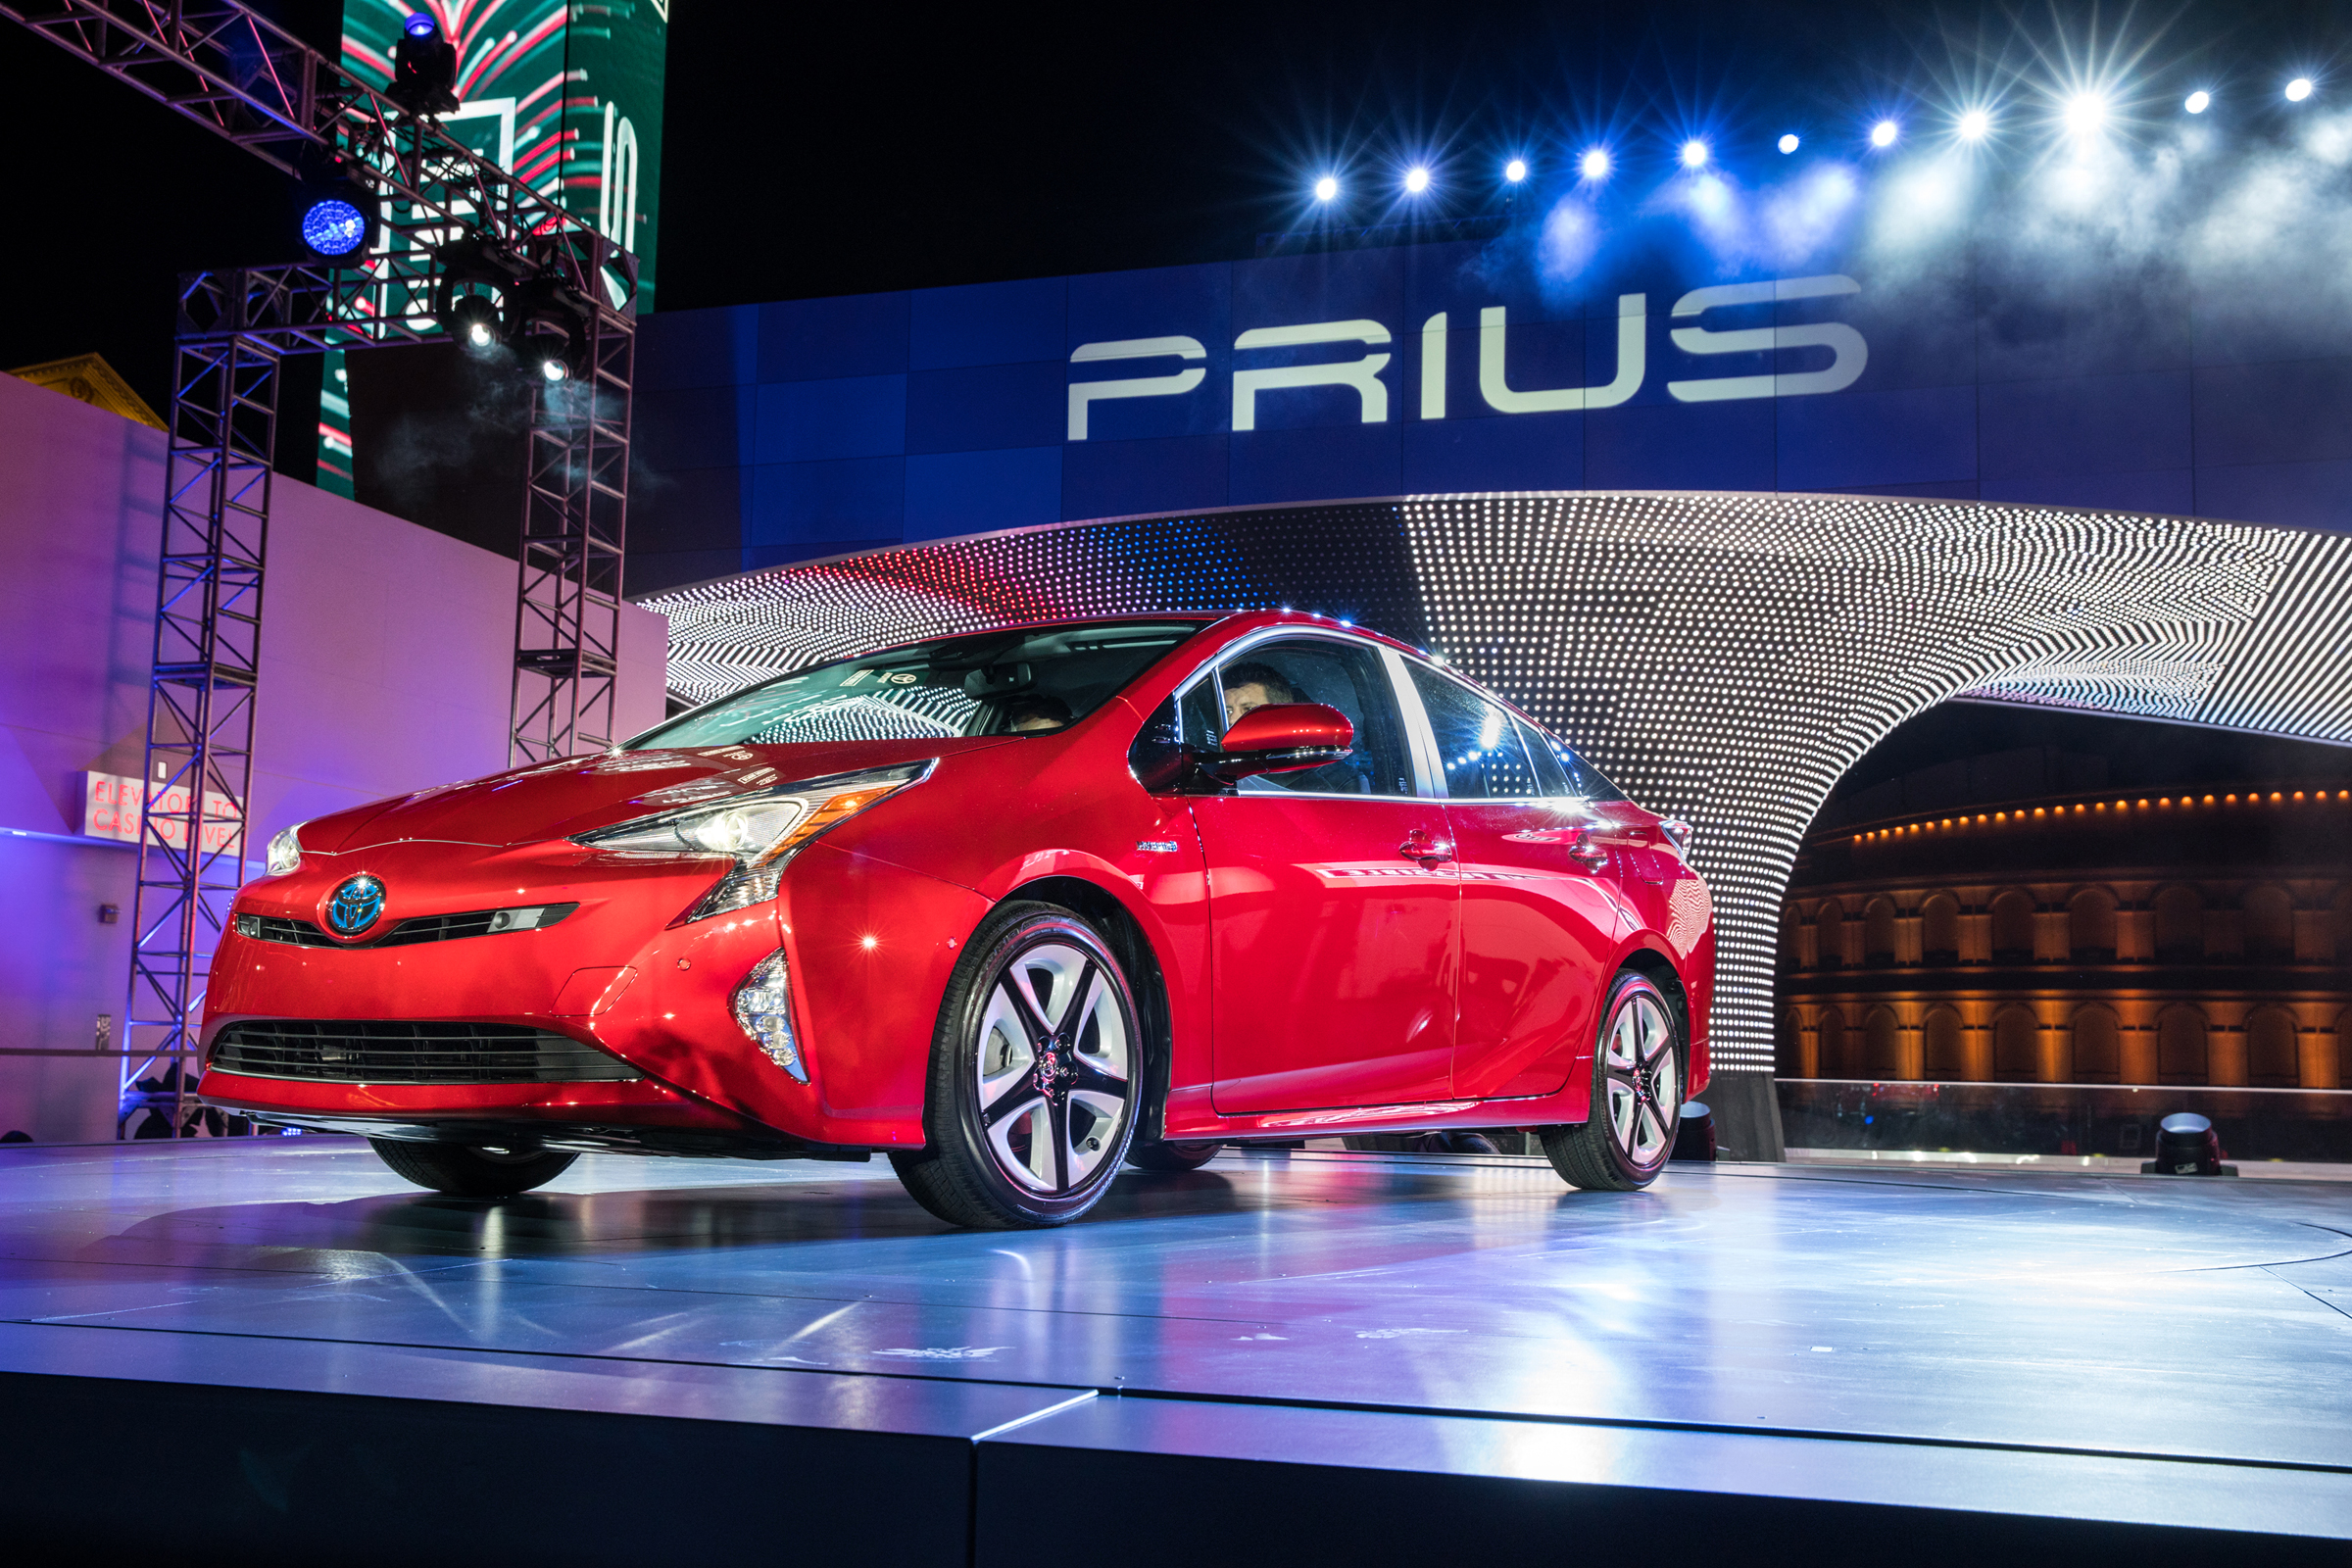 2016 Toyota Prius Красный Металлик Автомобили фото 2400x1600 авто, машины, ...